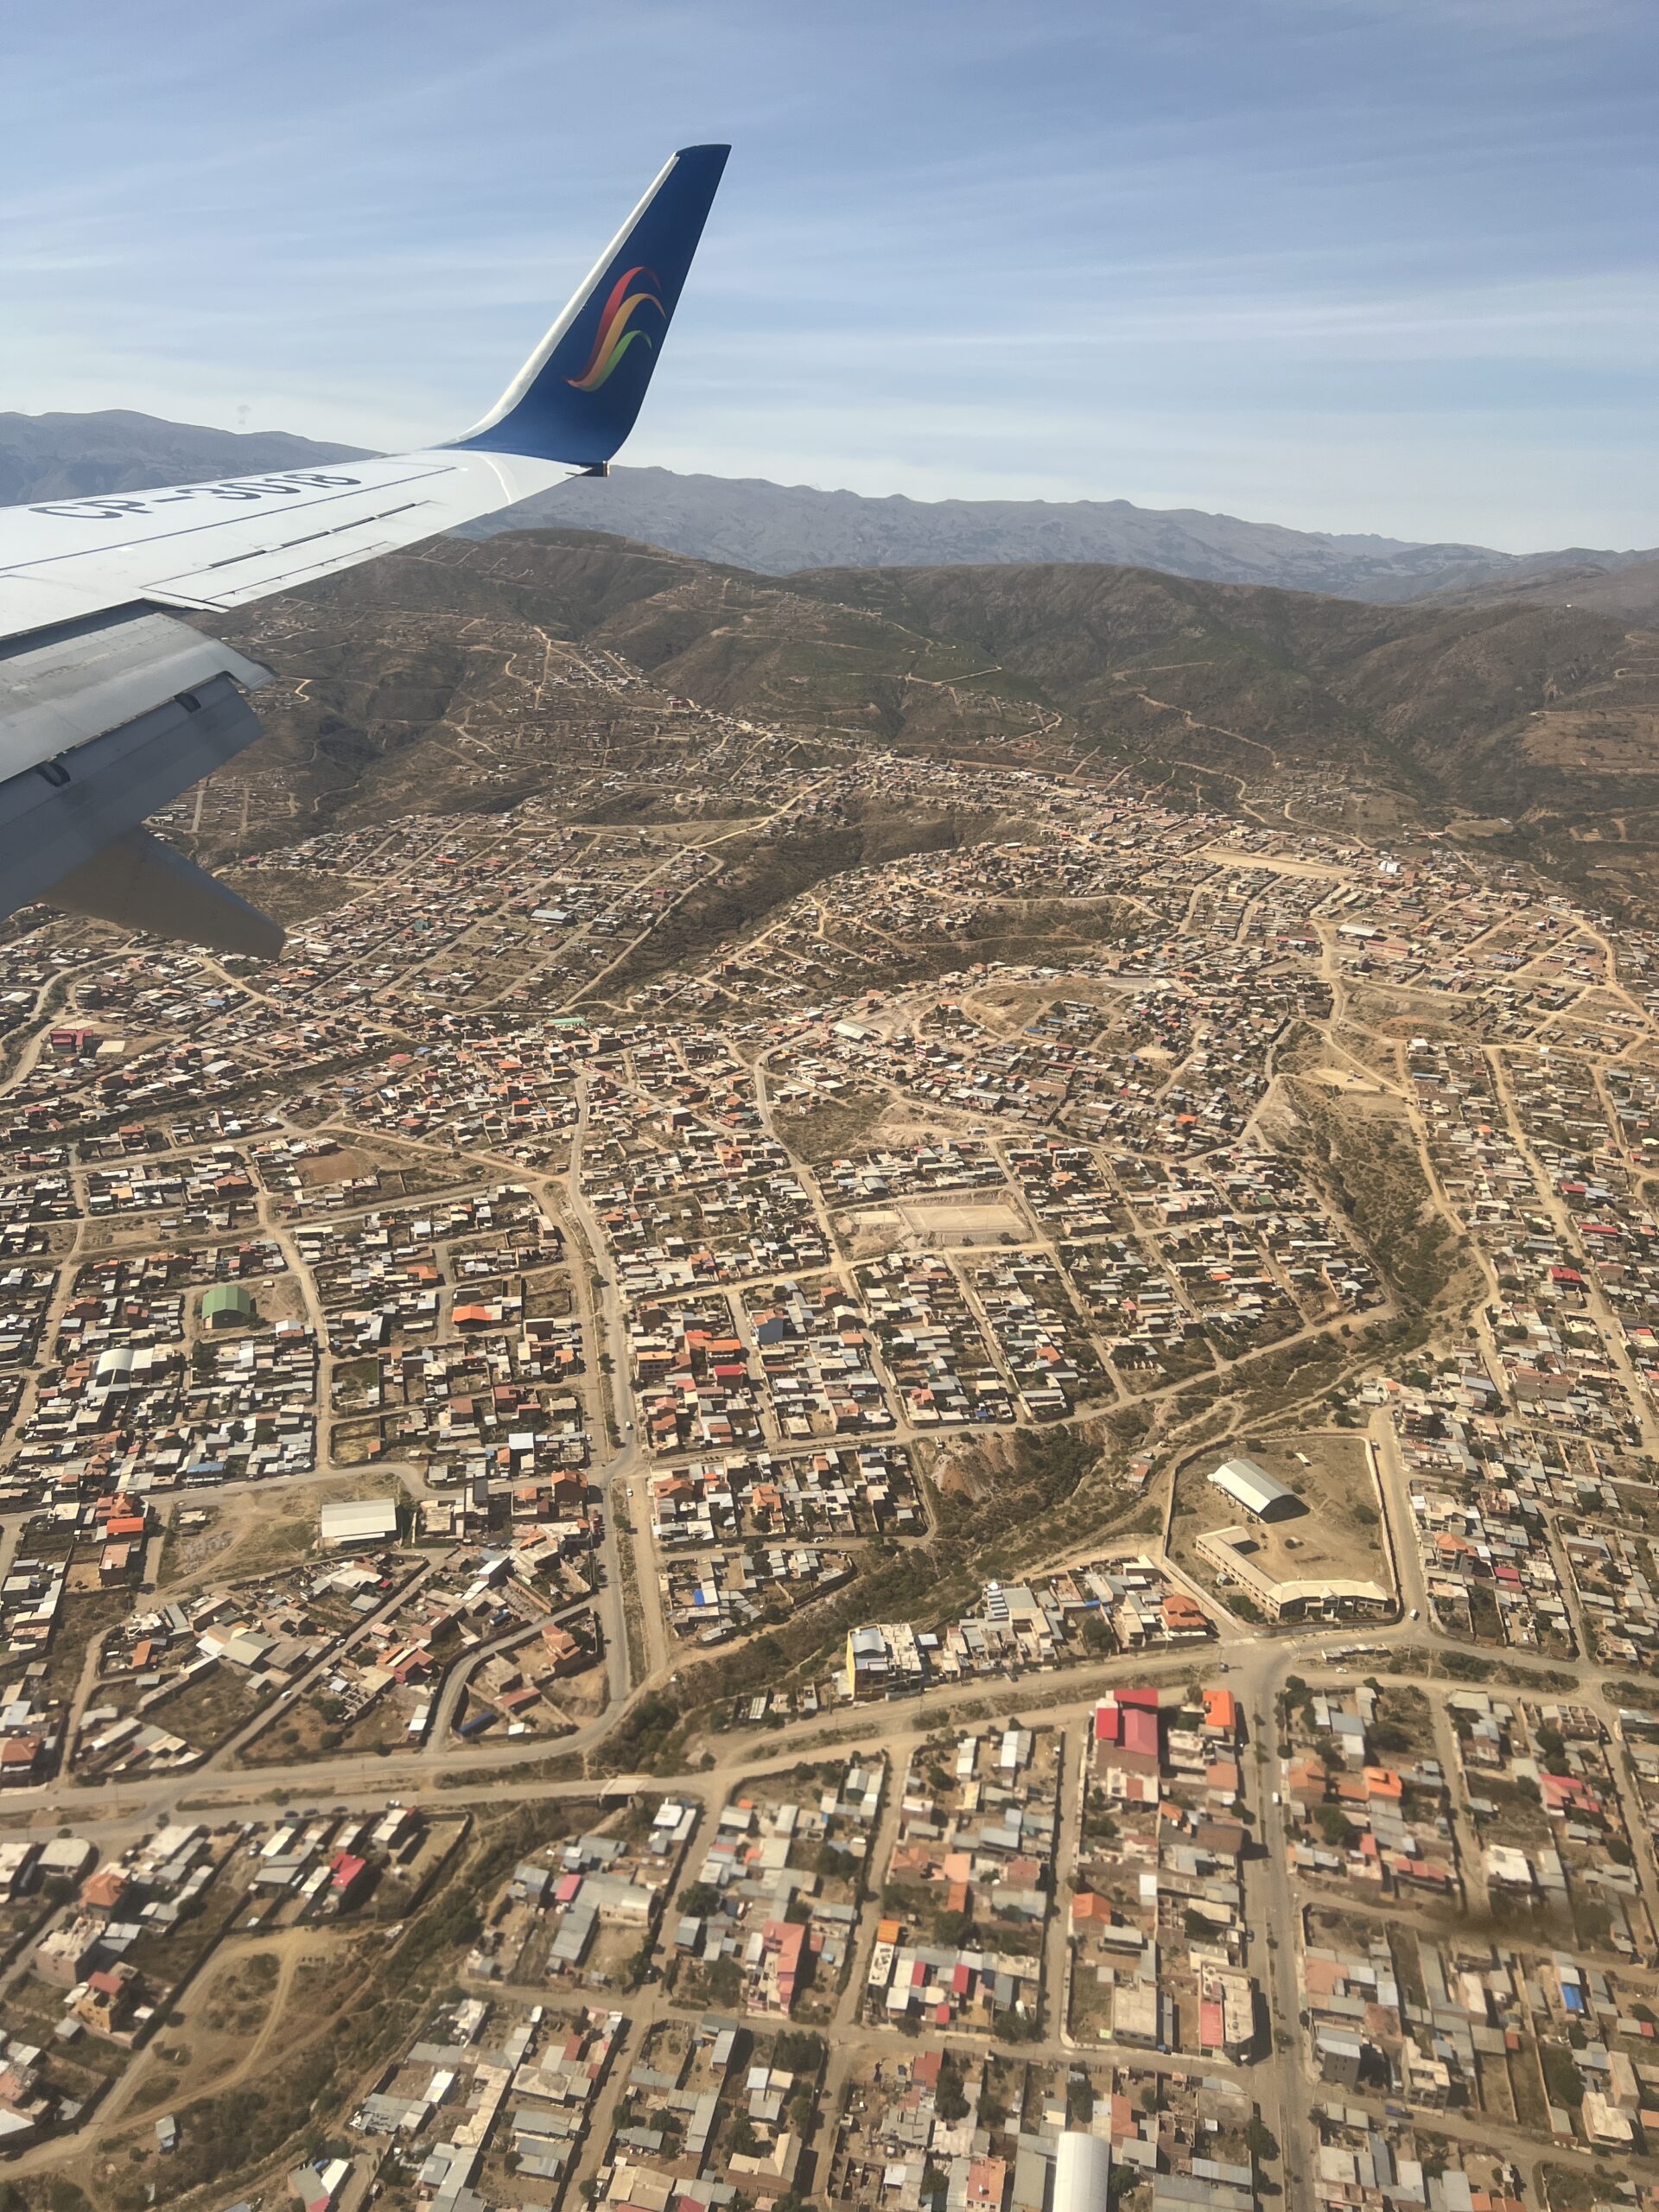 La Paz to Uyuni by plane